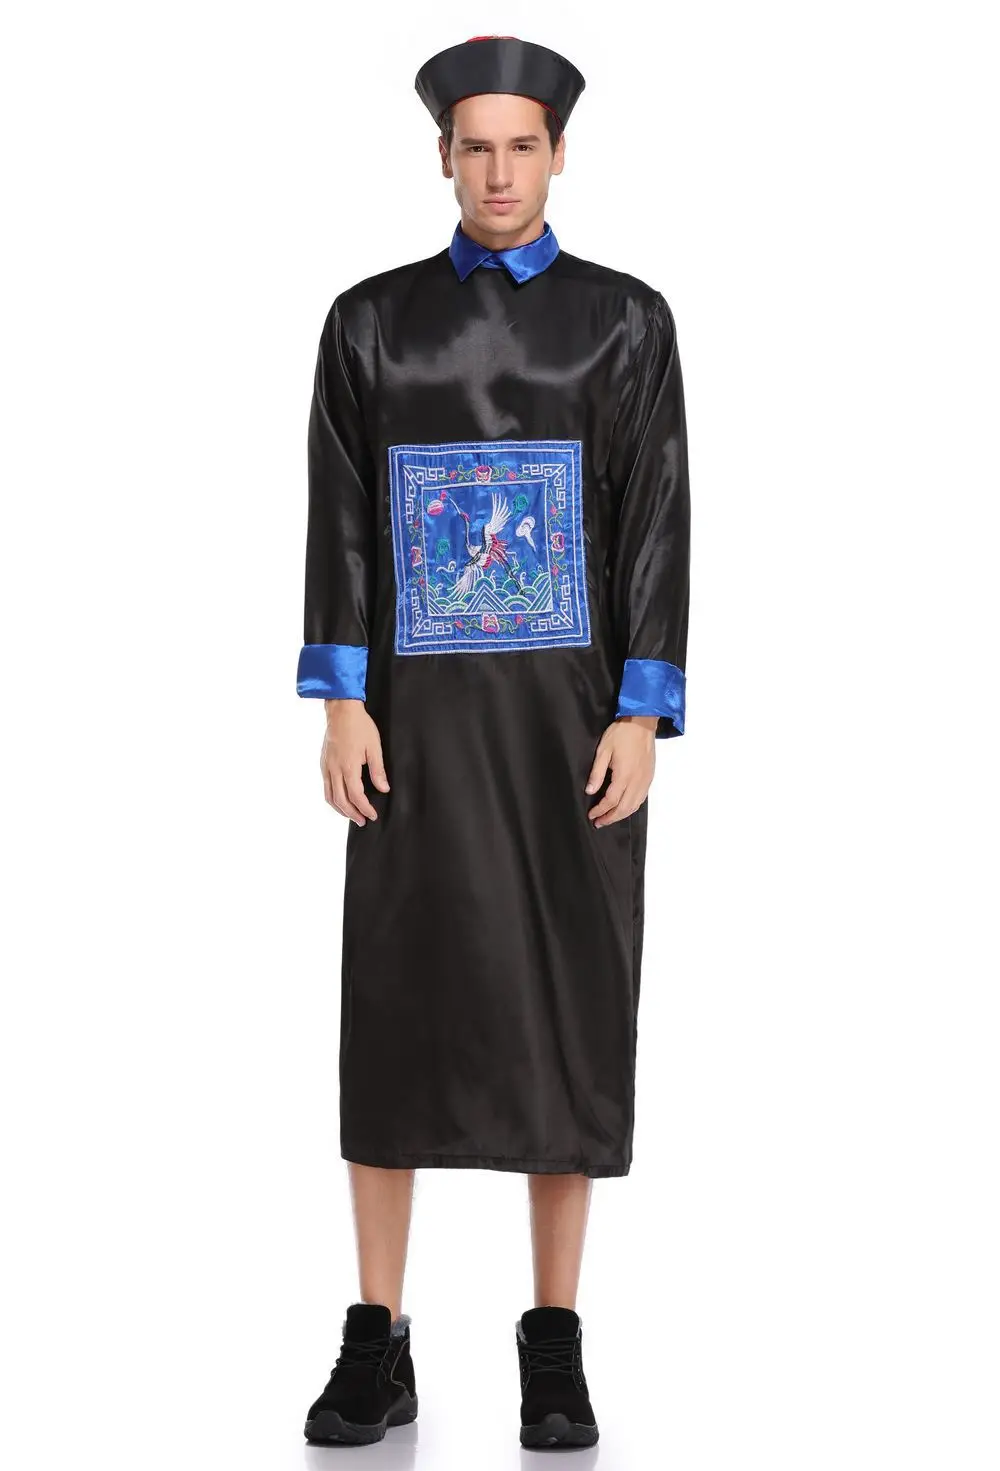 Хэллоуин платье наряд для родителей и ребенка костюм Зомби костюмы ужас костюм для косплея, для взрослых обувь для мужчин и женщин в стиле Зомби костюм с юбкой